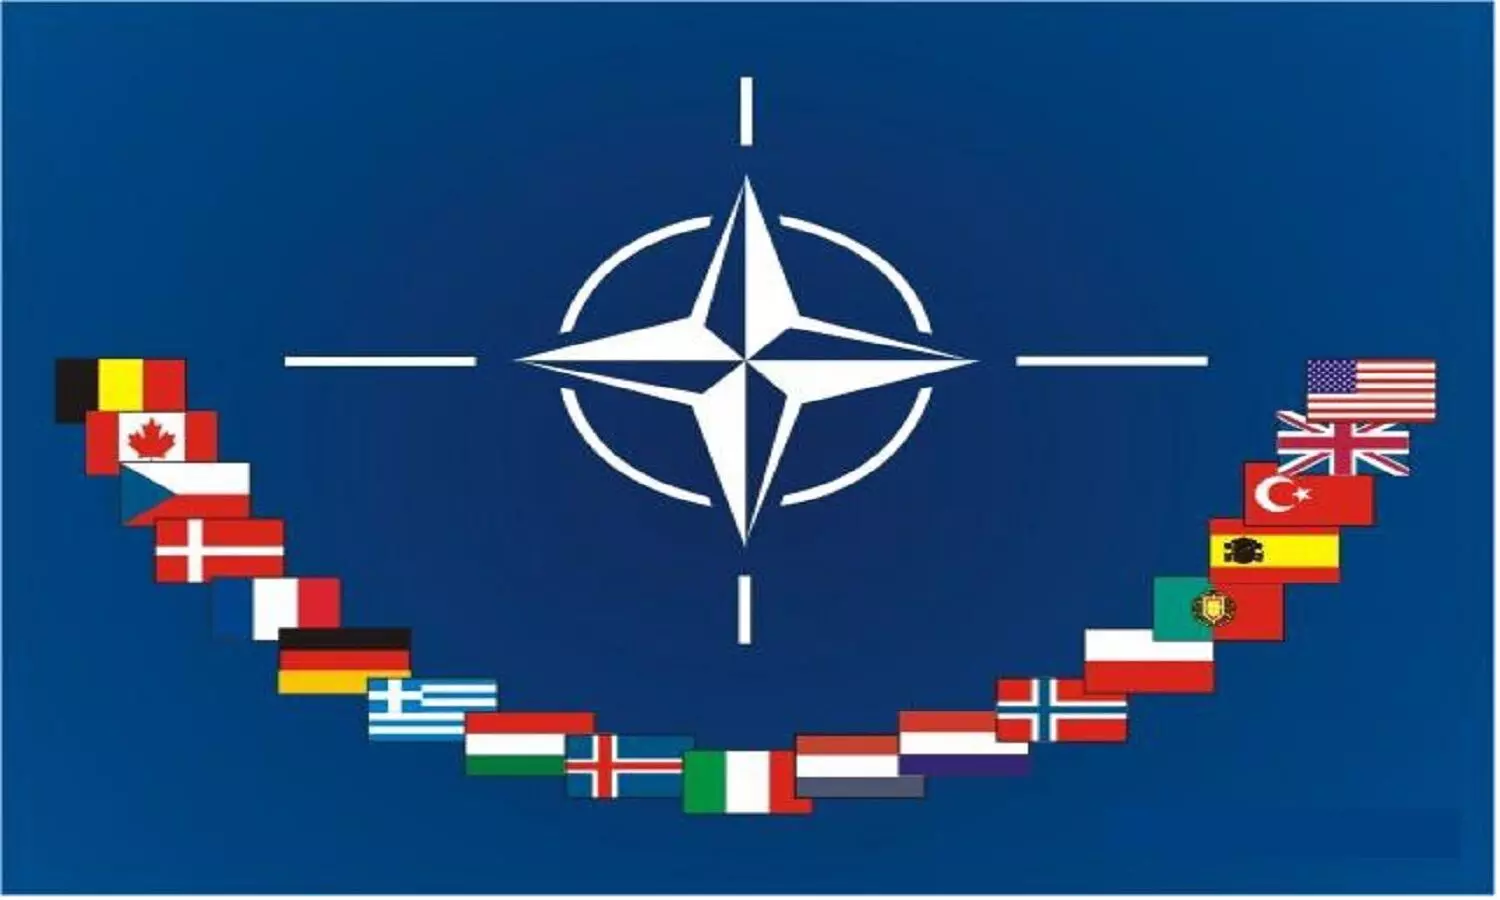 NATO Ukraine: यूक्रेन की मदद करने NATO का इनकार, पहले कही थी साथ देने की बात अब अकेला छोड़ दिया